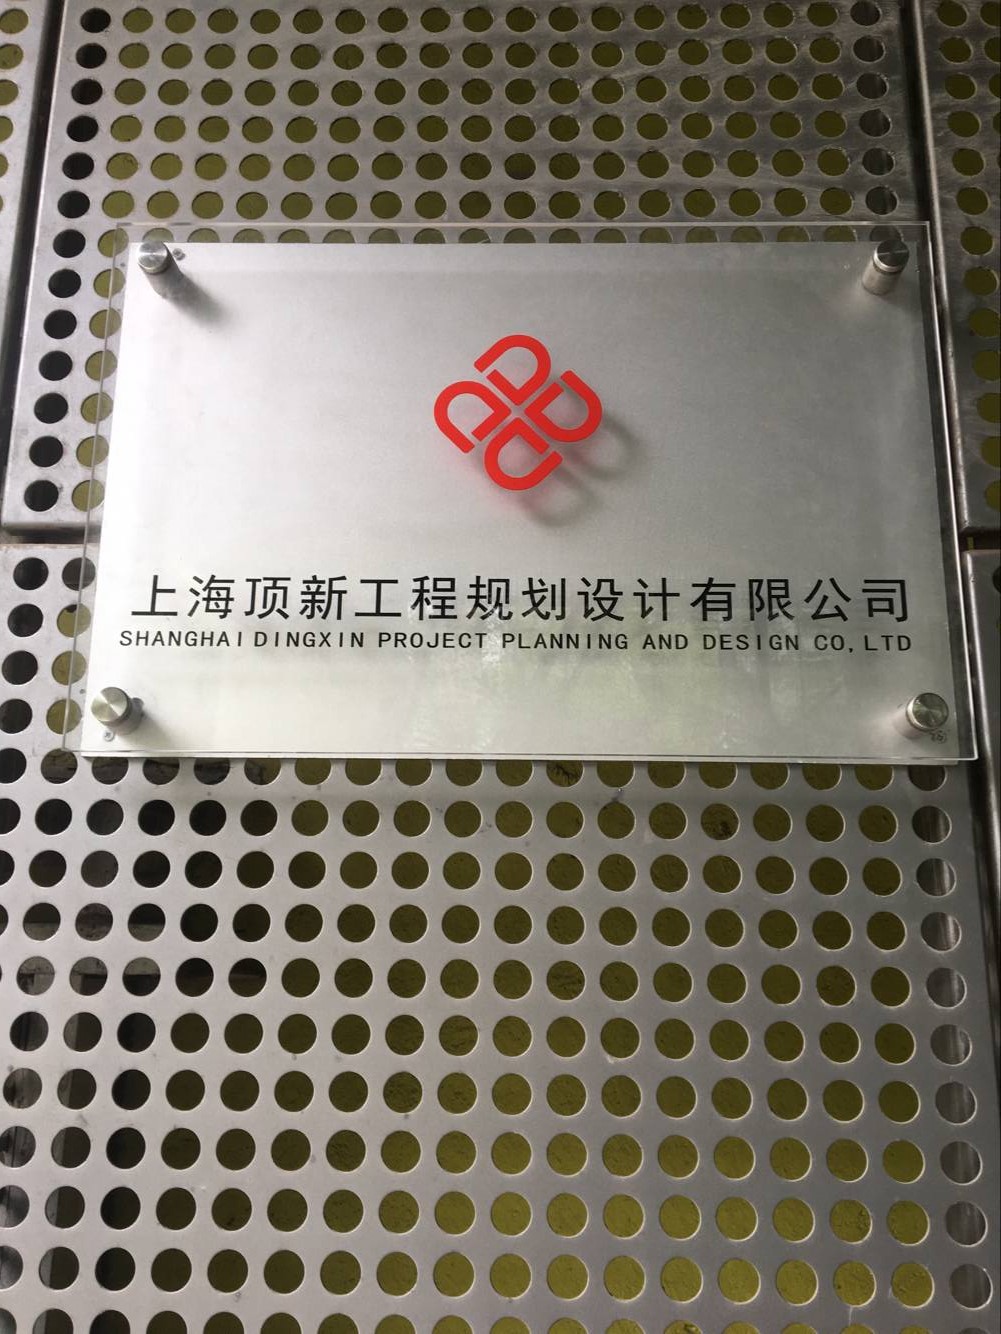 上海顶新工程规划设计有限公司